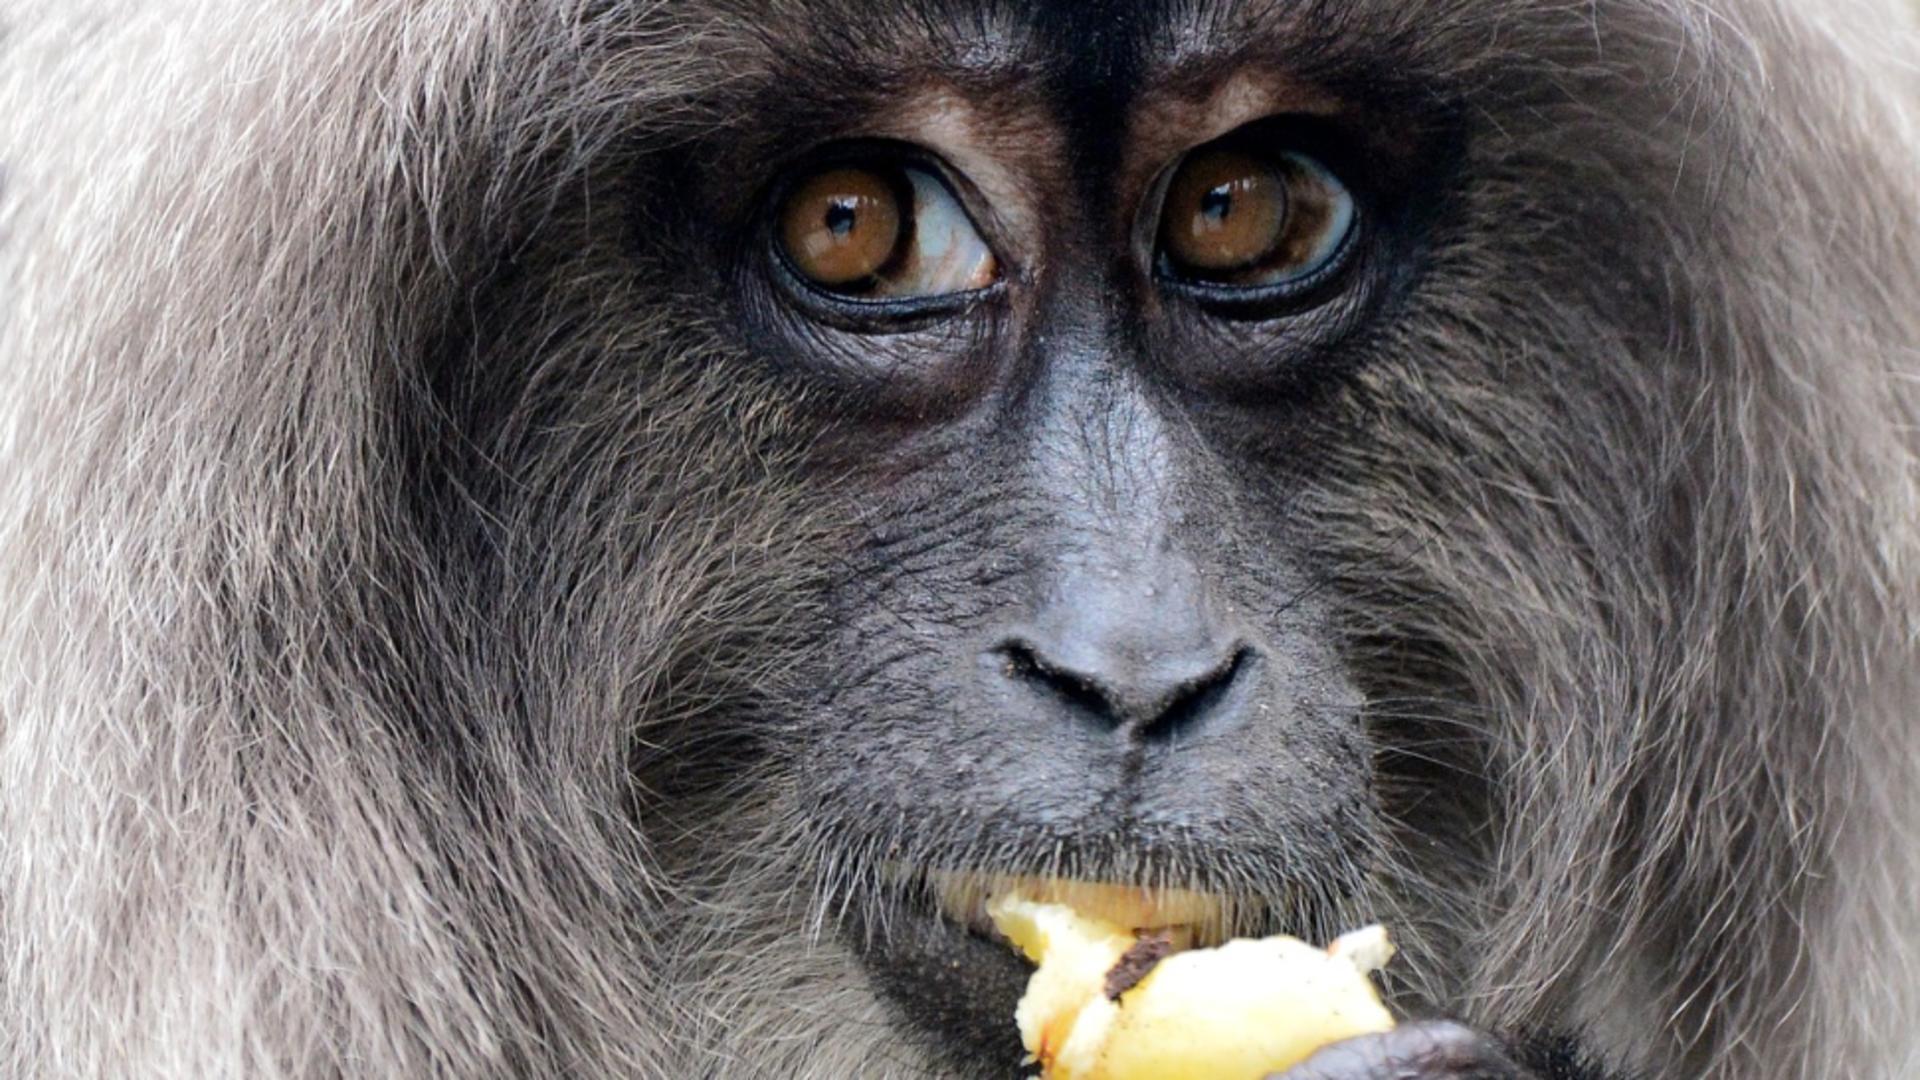 Dacă am evoluat din maimuțe, de ce mai există maimuțe? Ce este greșit în întrebare